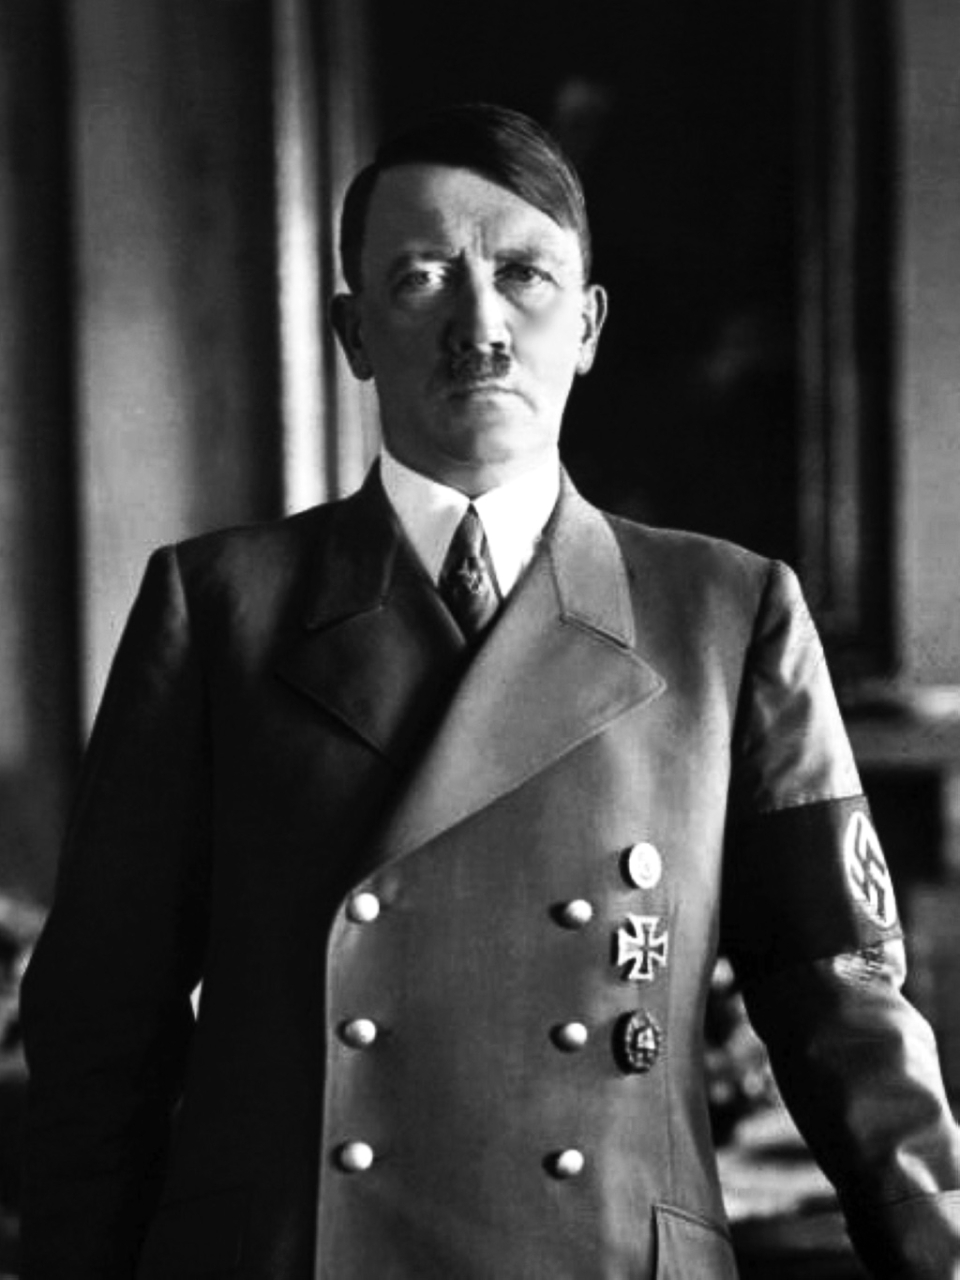 الصورة : 1941 أدولف هتلر ينصّب نفسه قائداً أعلى على الجيوش الألمانية ويلقب نفسه بالفوهرر (القائد).